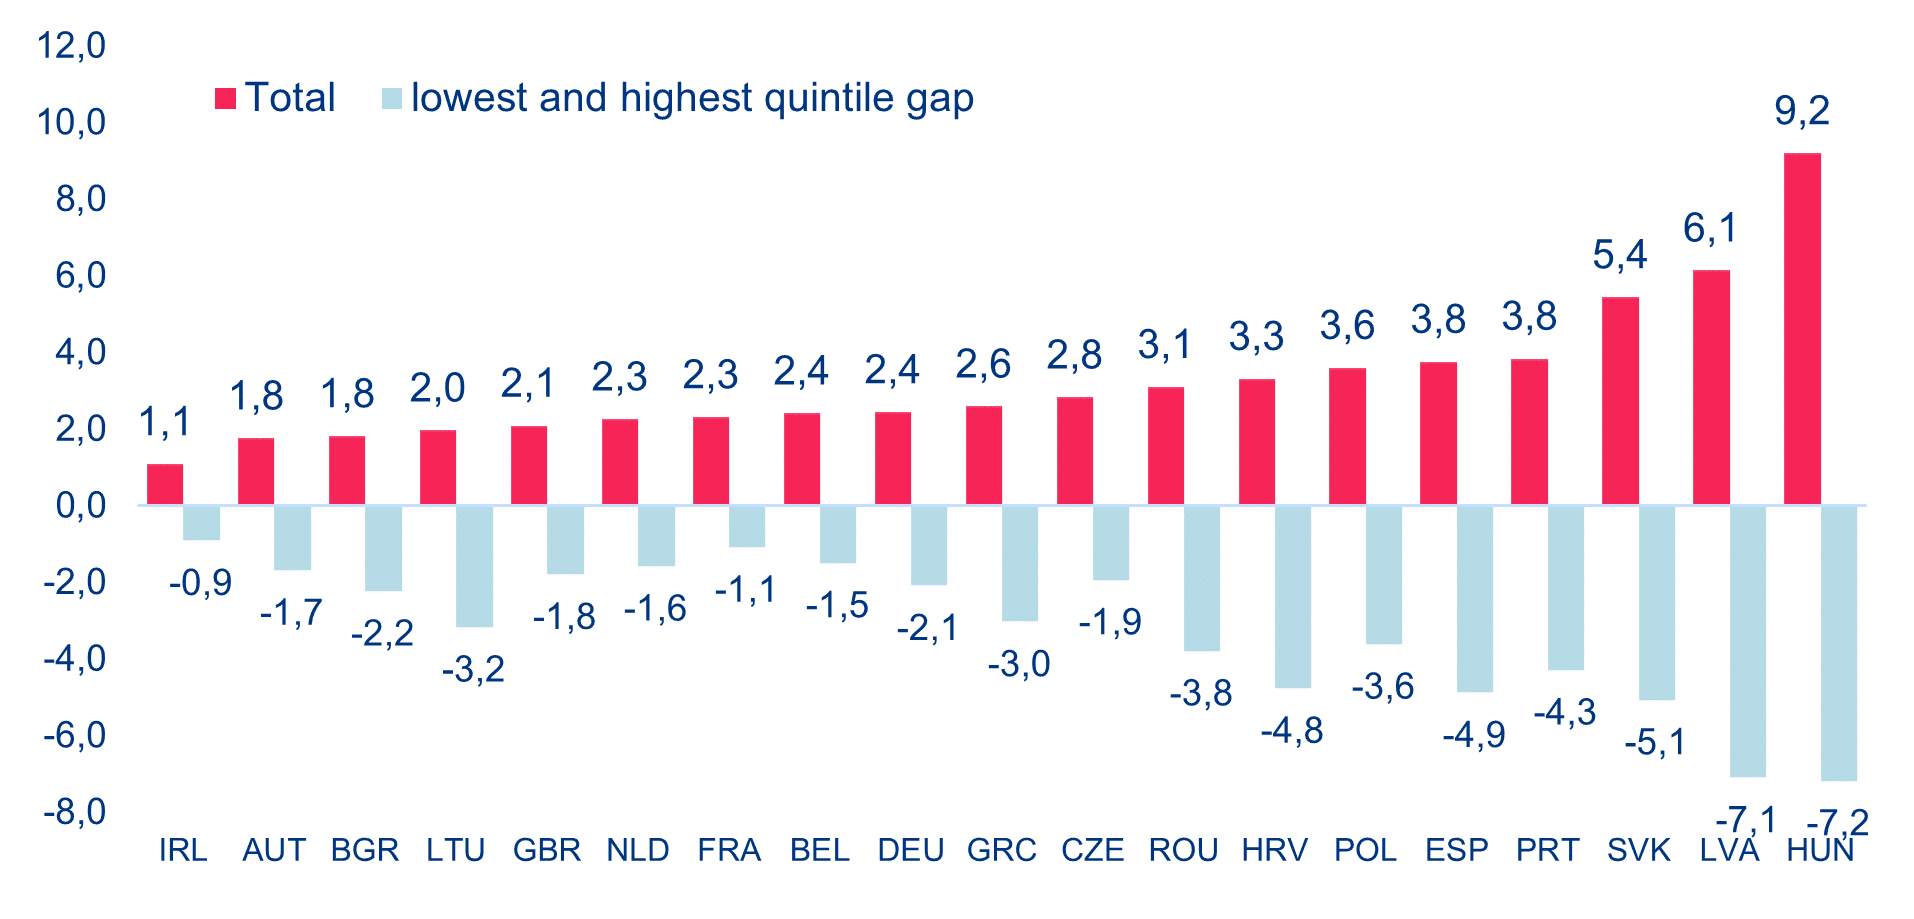 Europa — utrata siły nabywczej konsumentów i różnica między najniższym a najwyższym kwintylem dochodów